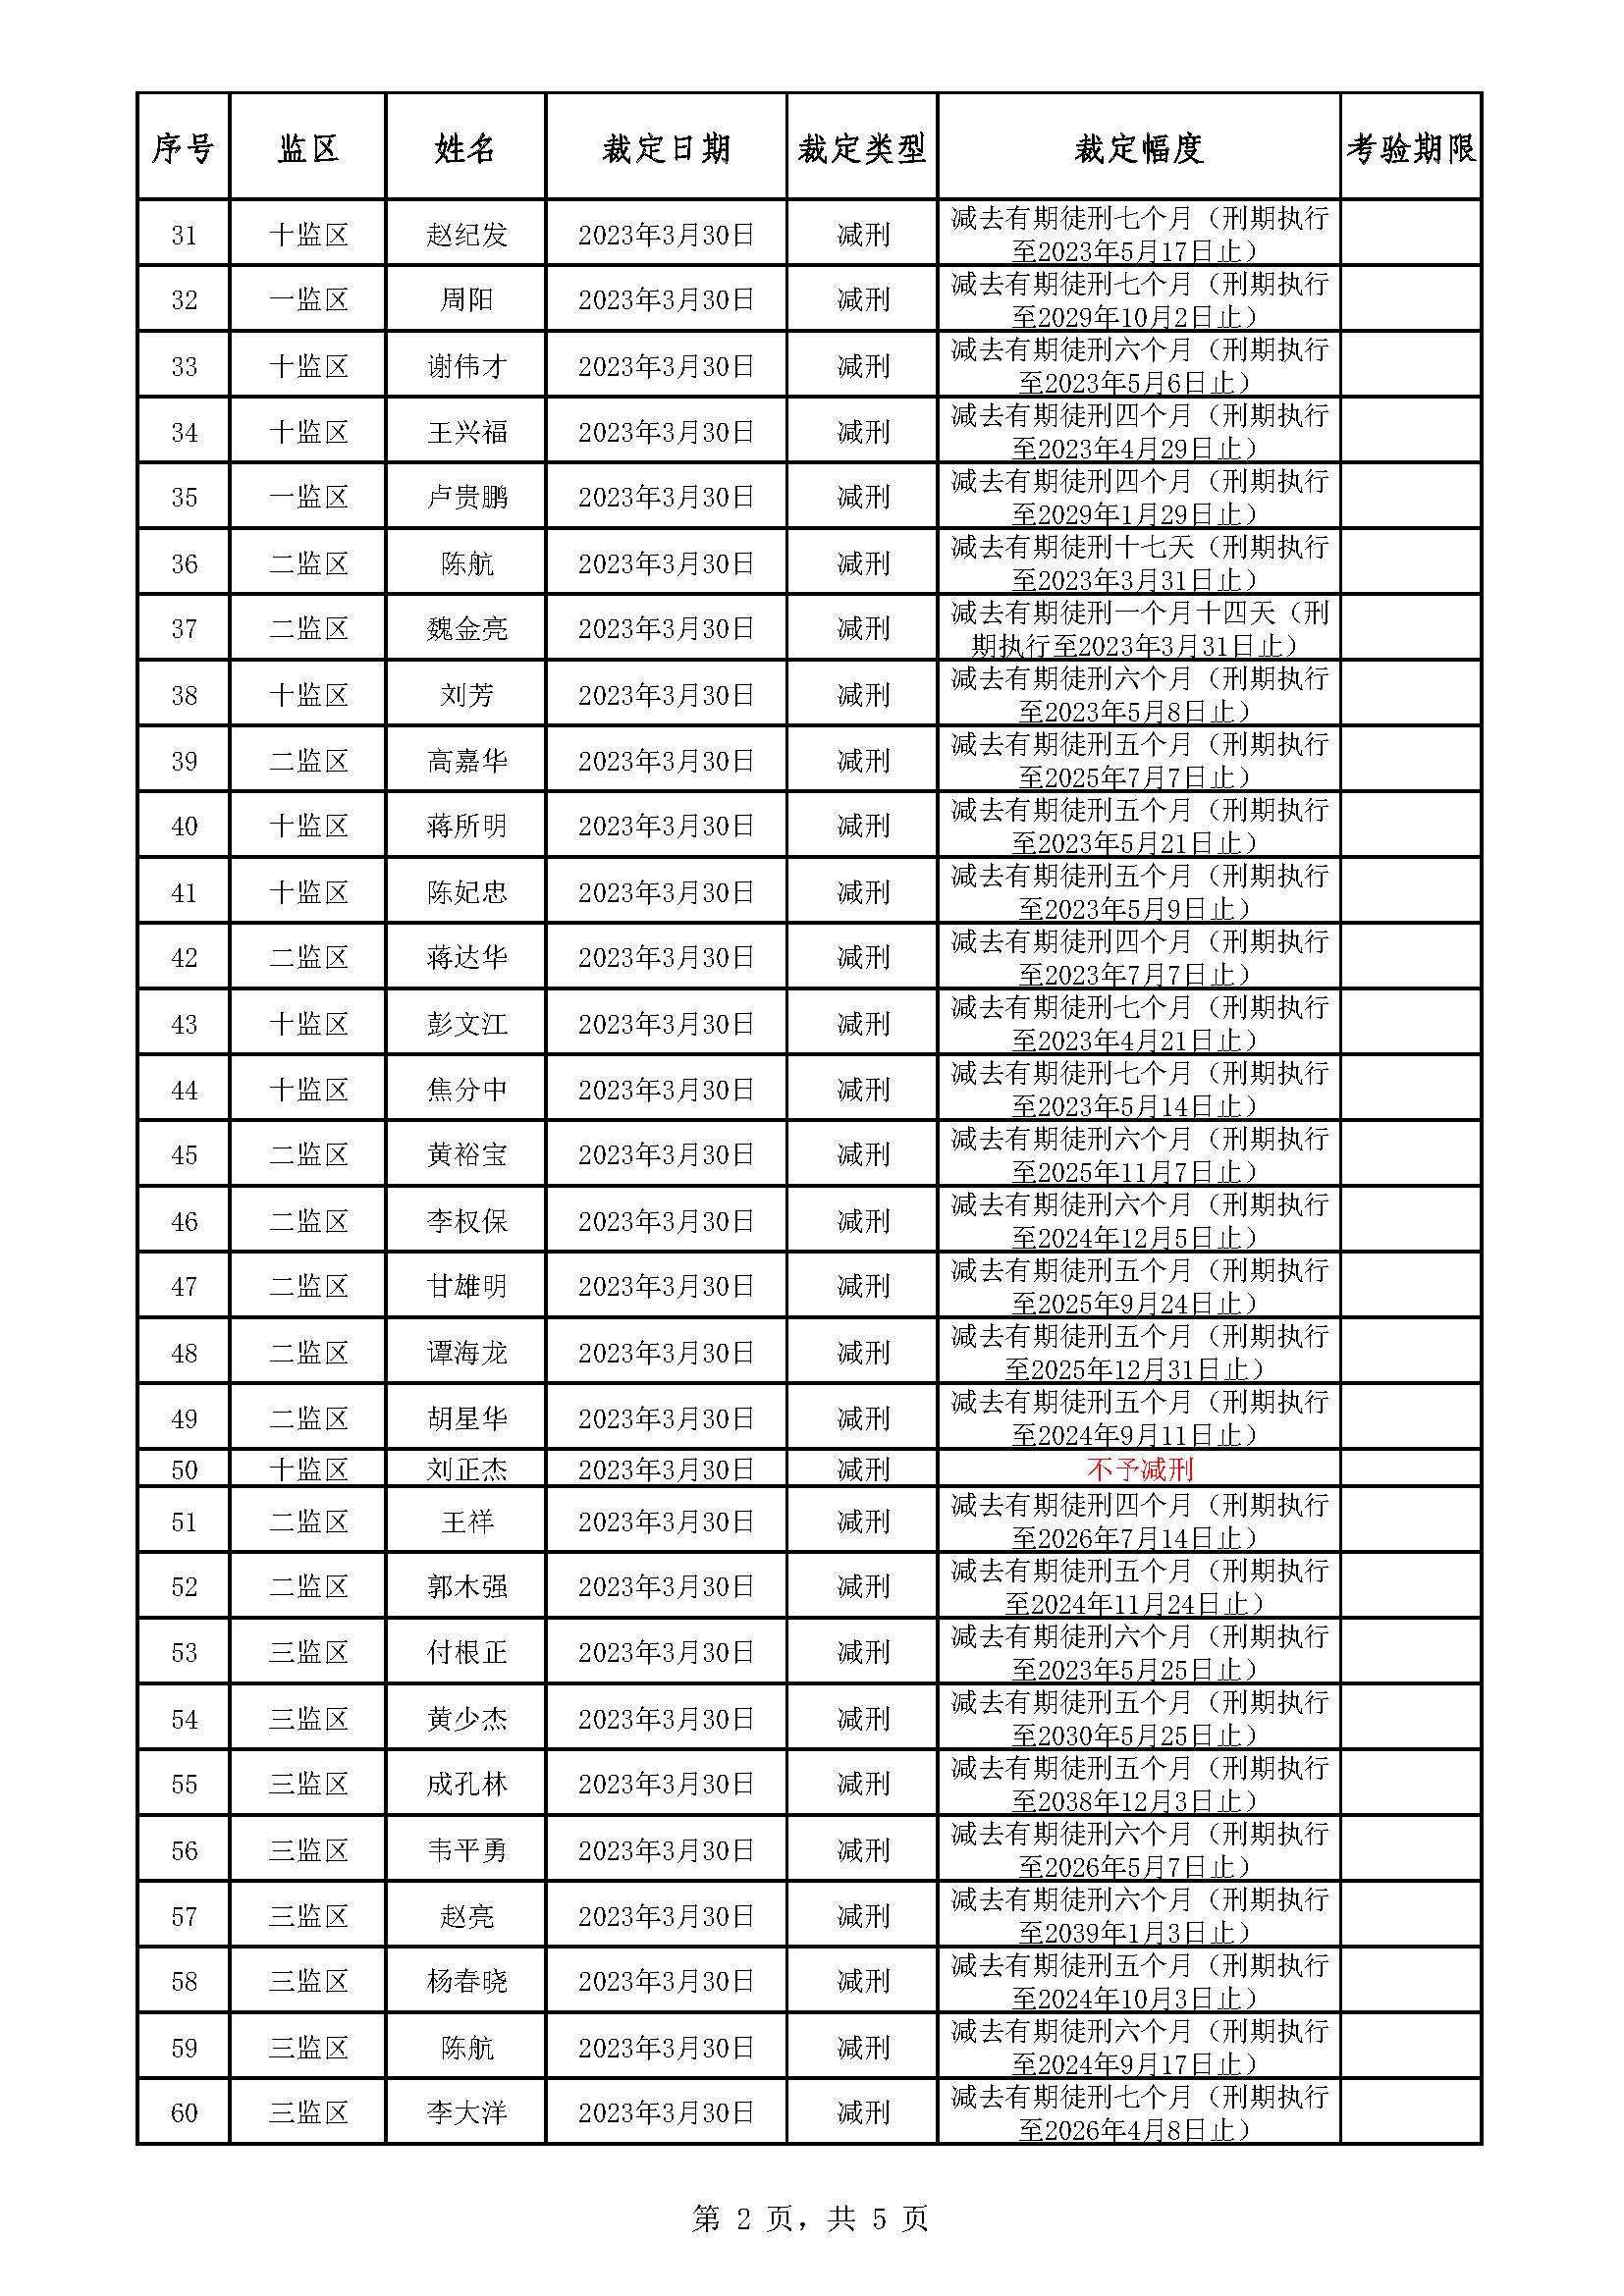 广东省明康监狱2022年第六批减刑假释裁定榜_页面_2.jpg